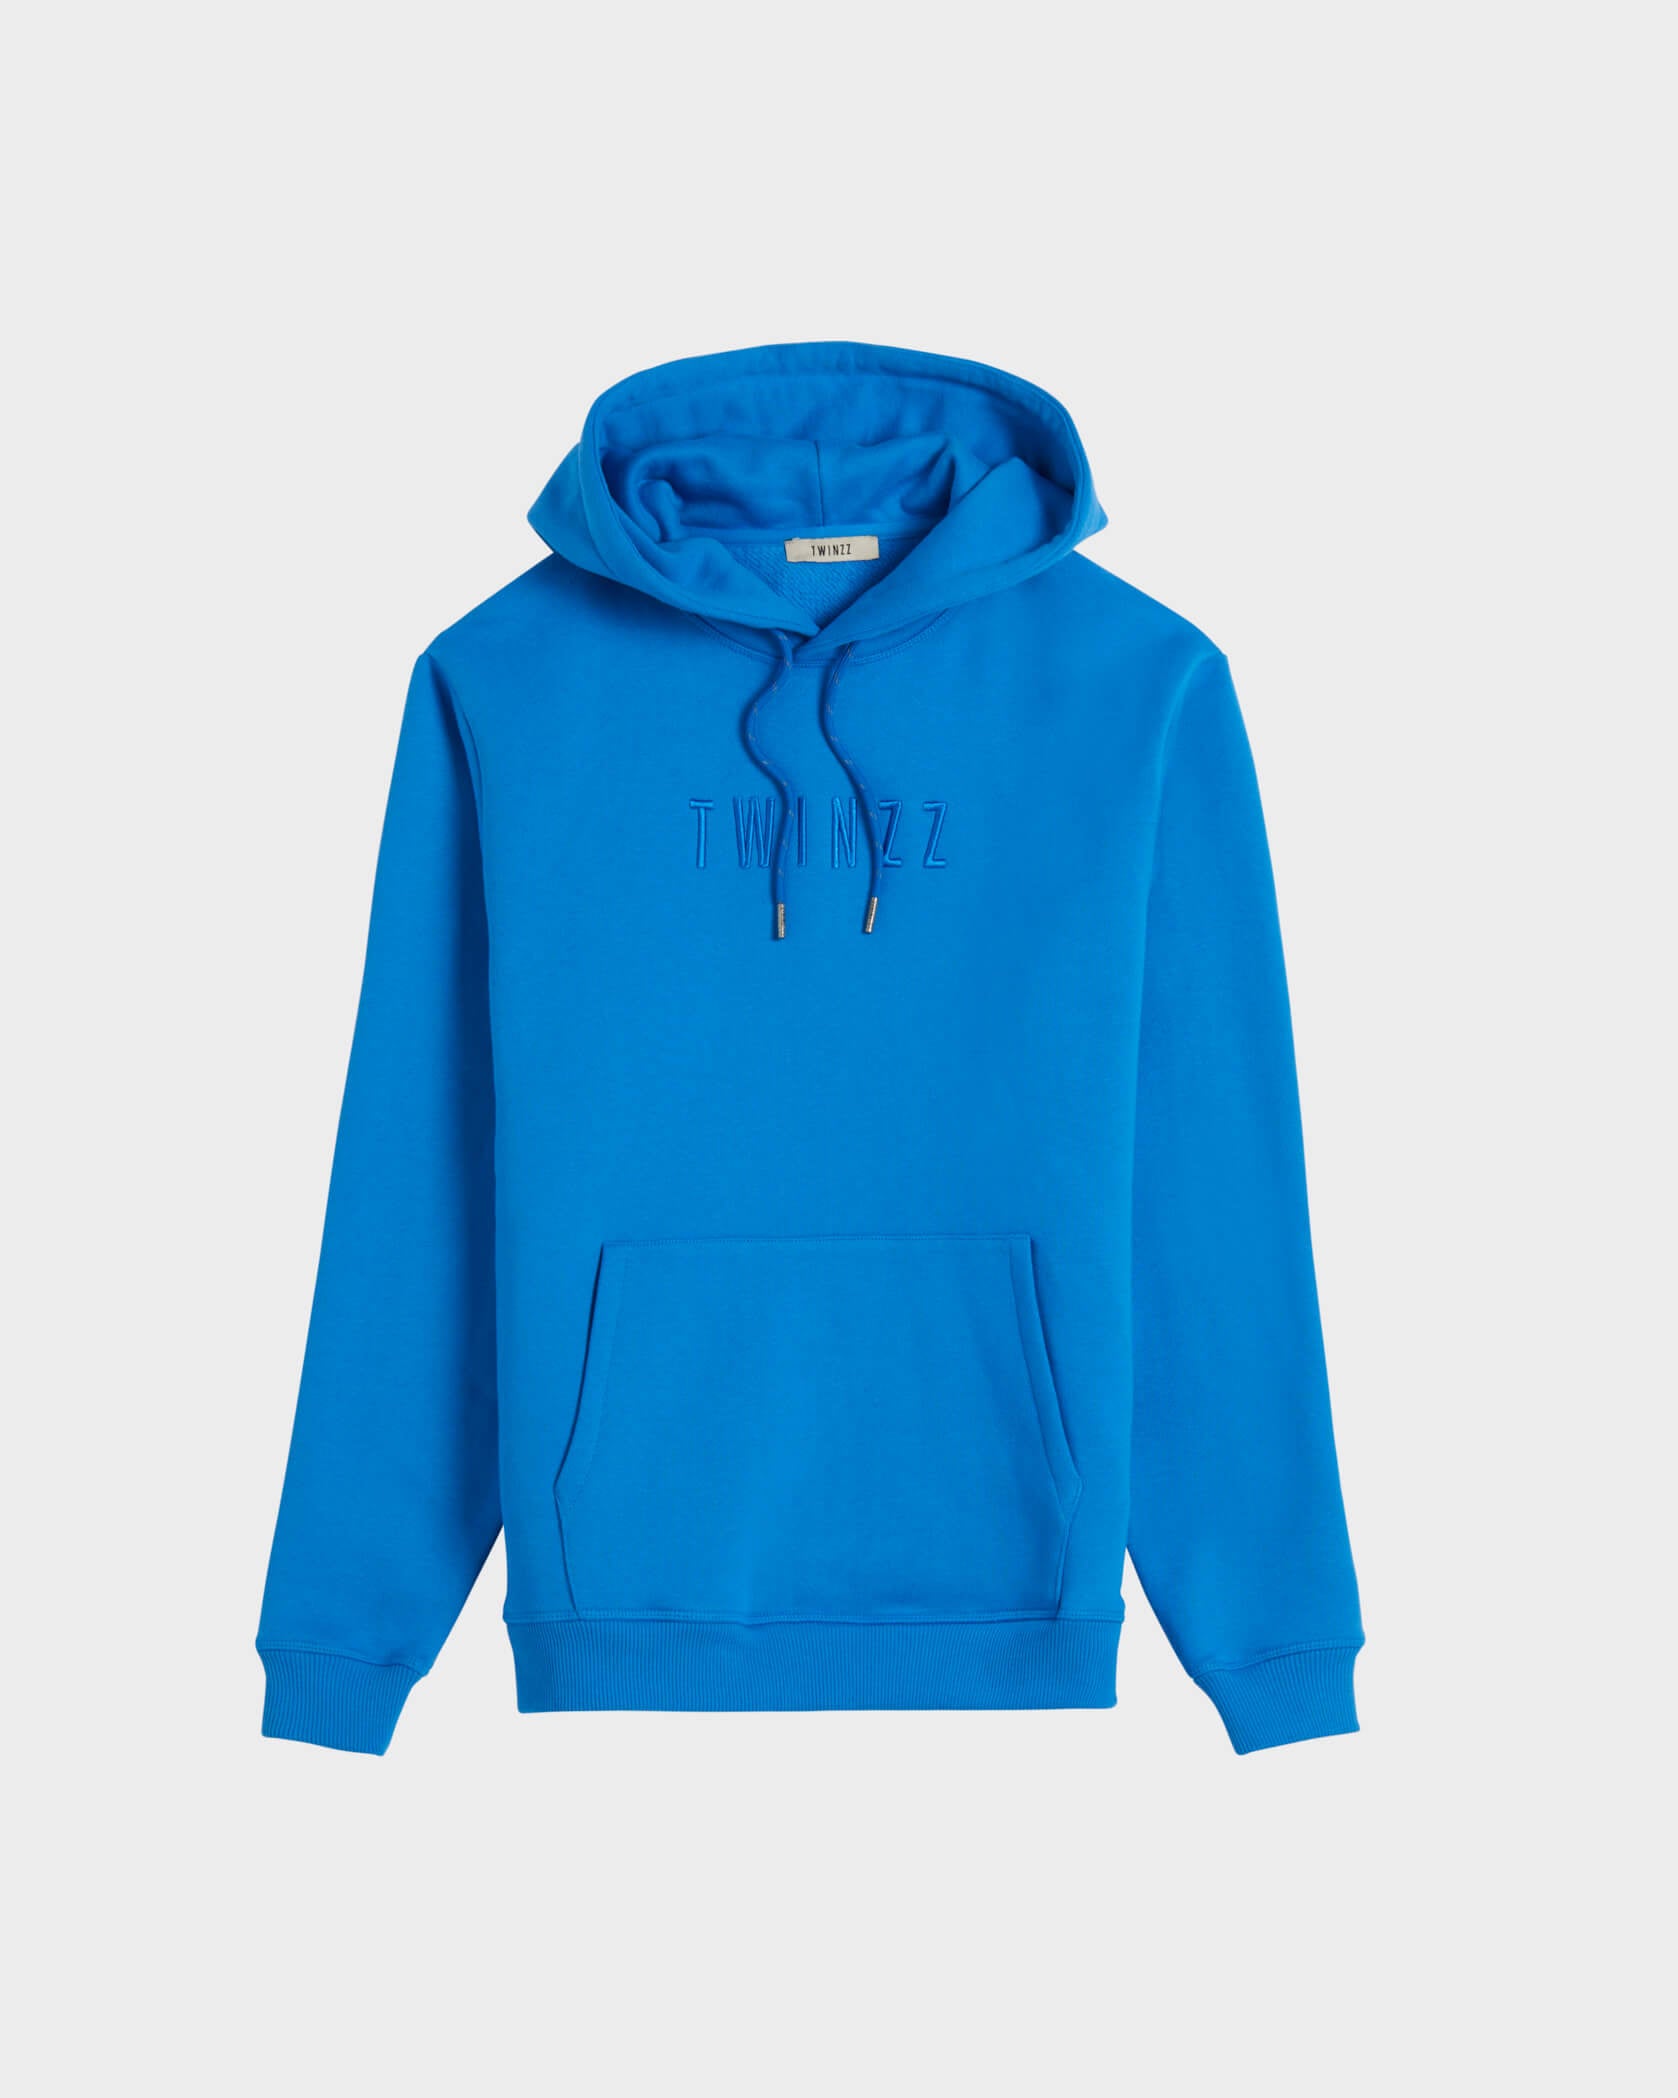 Twinzz blue hoodie